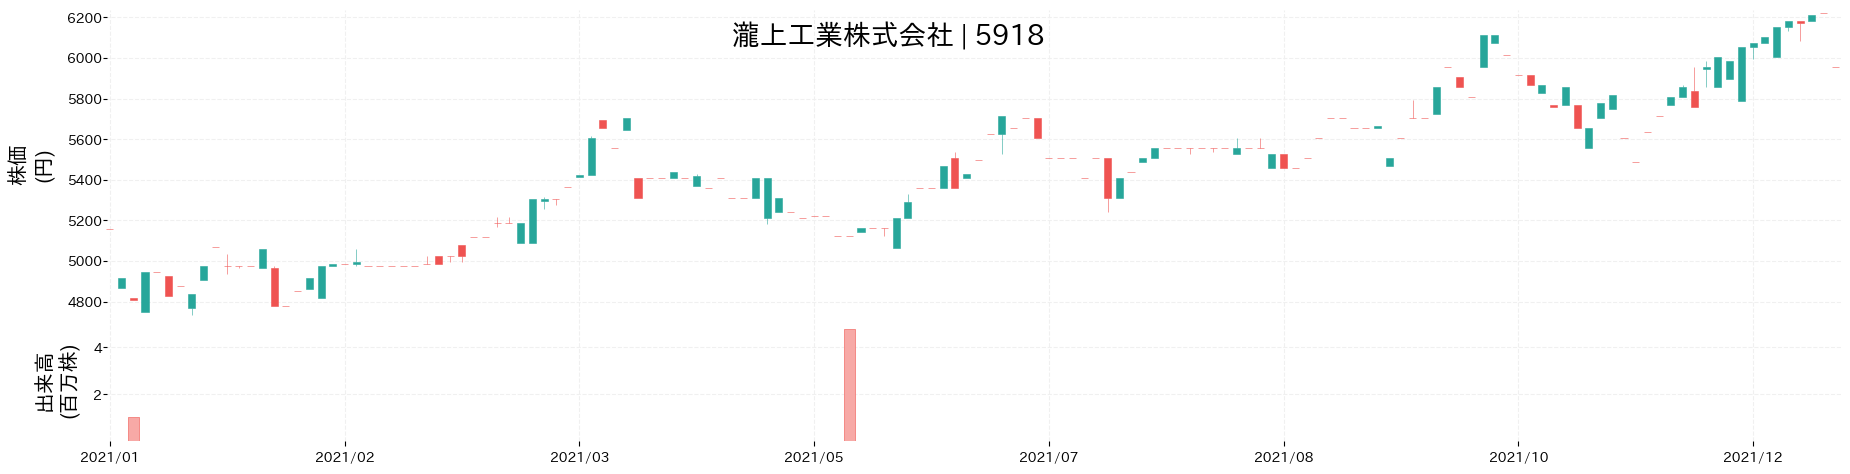 瀧上工業の株価推移(2021)